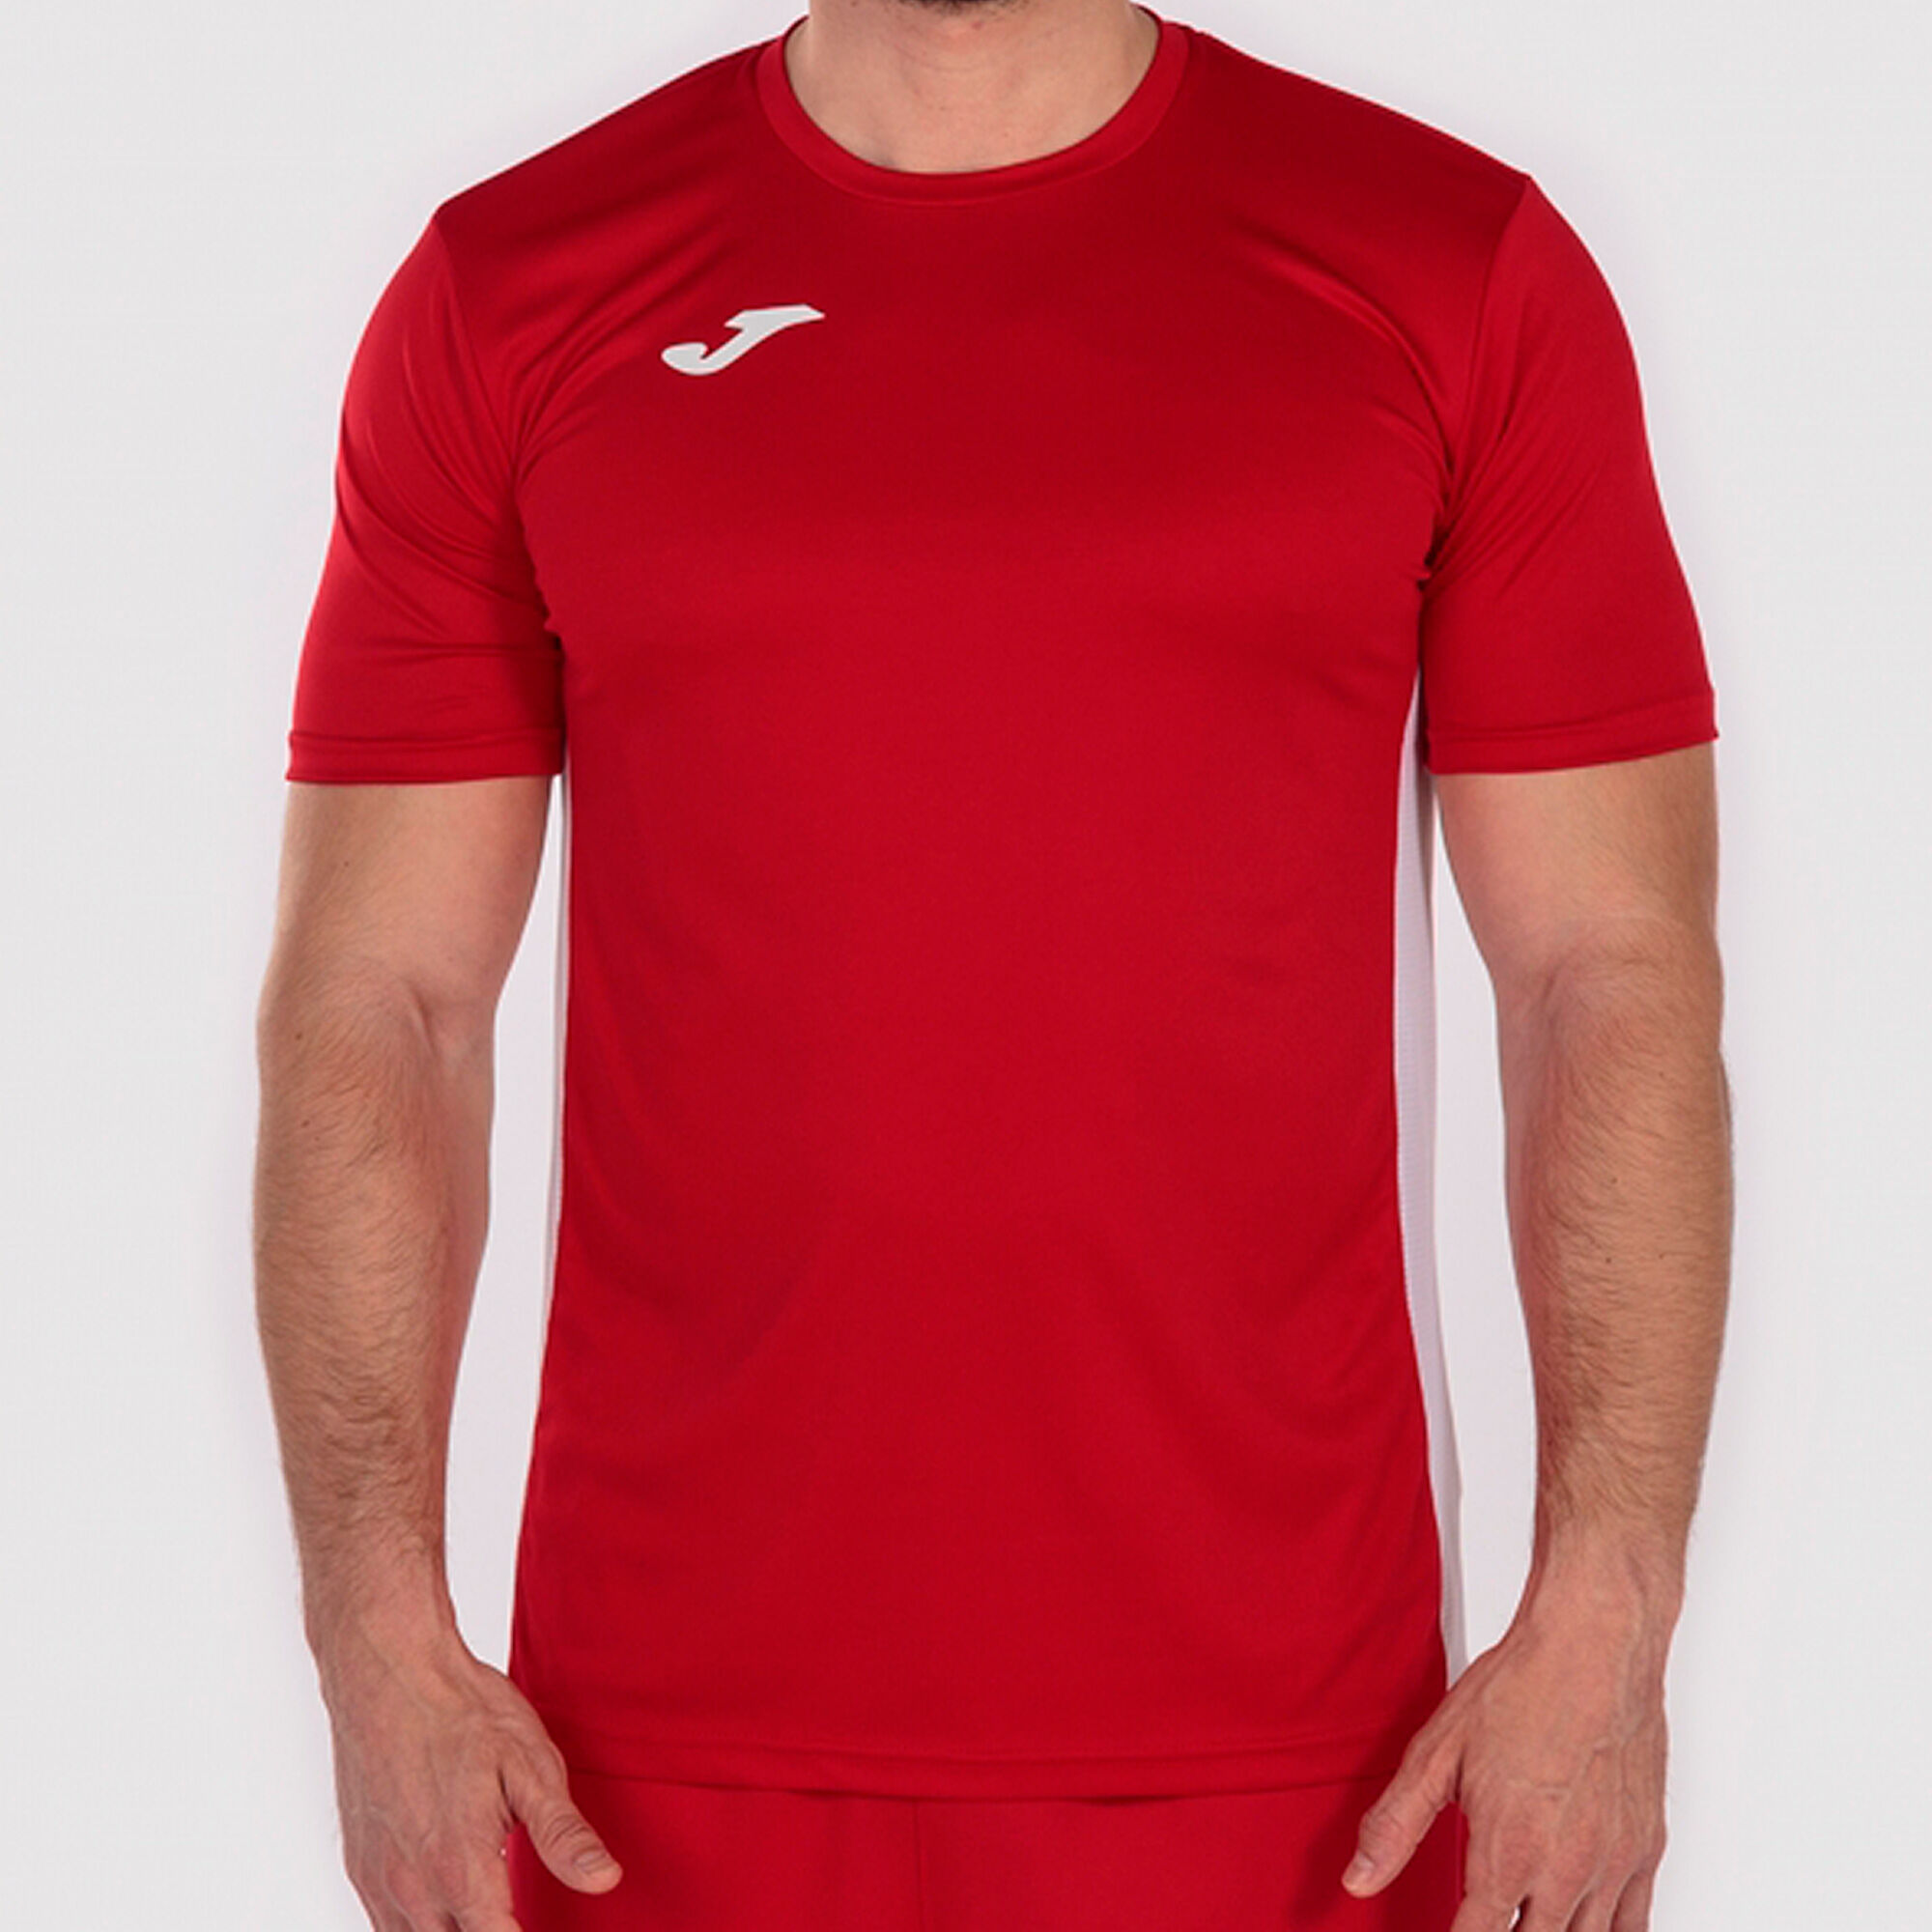 T-shirt manga curta homem Cosenza vermelho branco